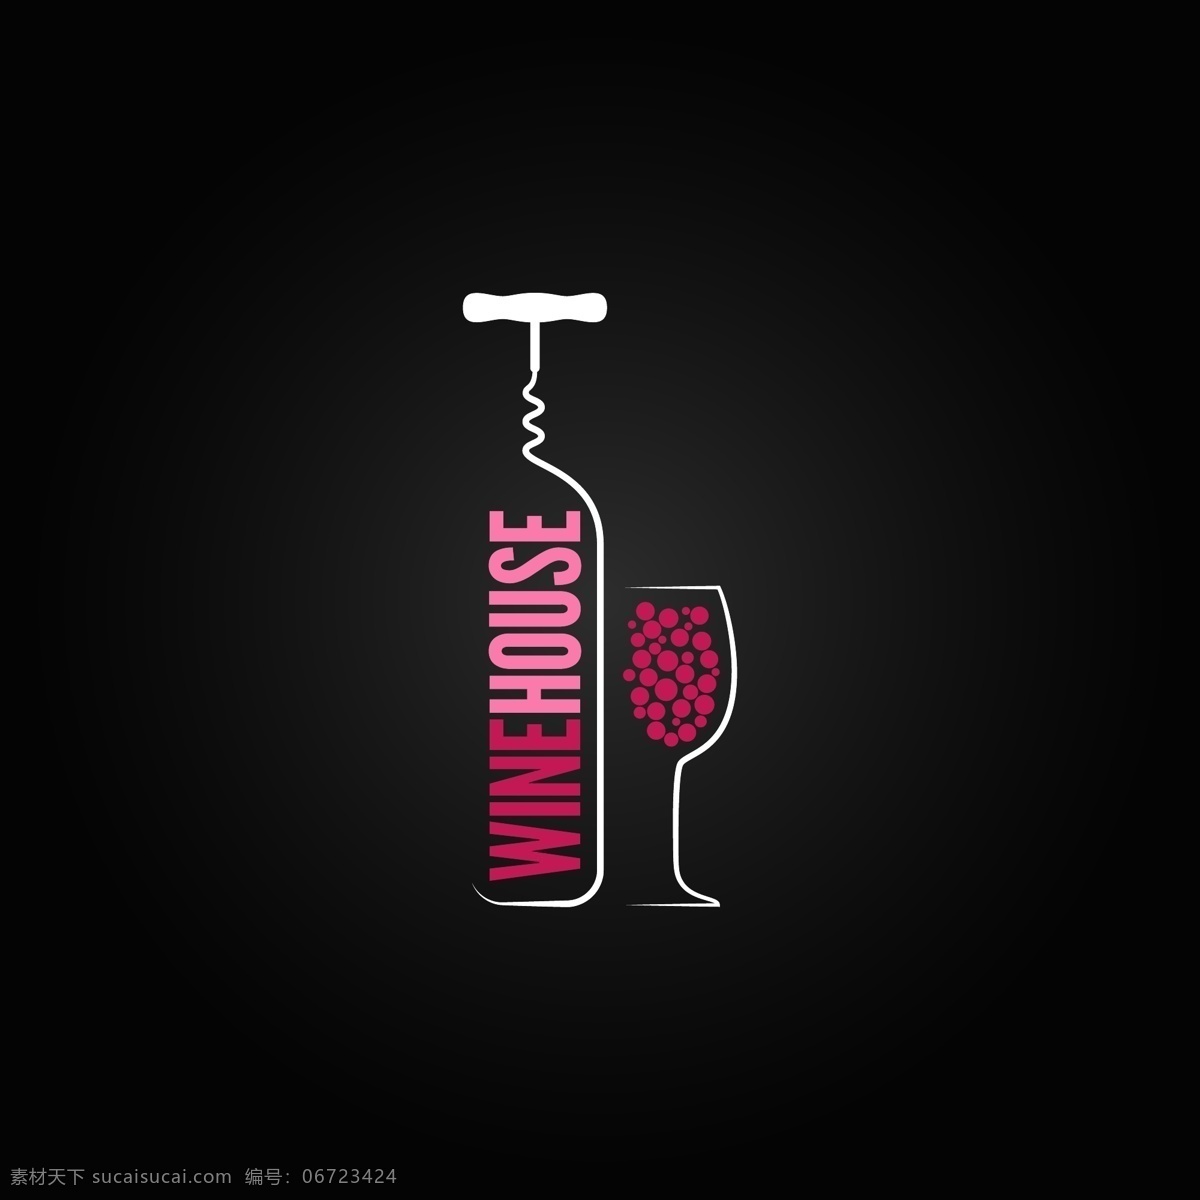 葡萄酒 logo 高脚杯 酒瓶 酒杯 红酒logo 红酒标志 标志设计 行业标志 标志图标 矢量素材 黑色